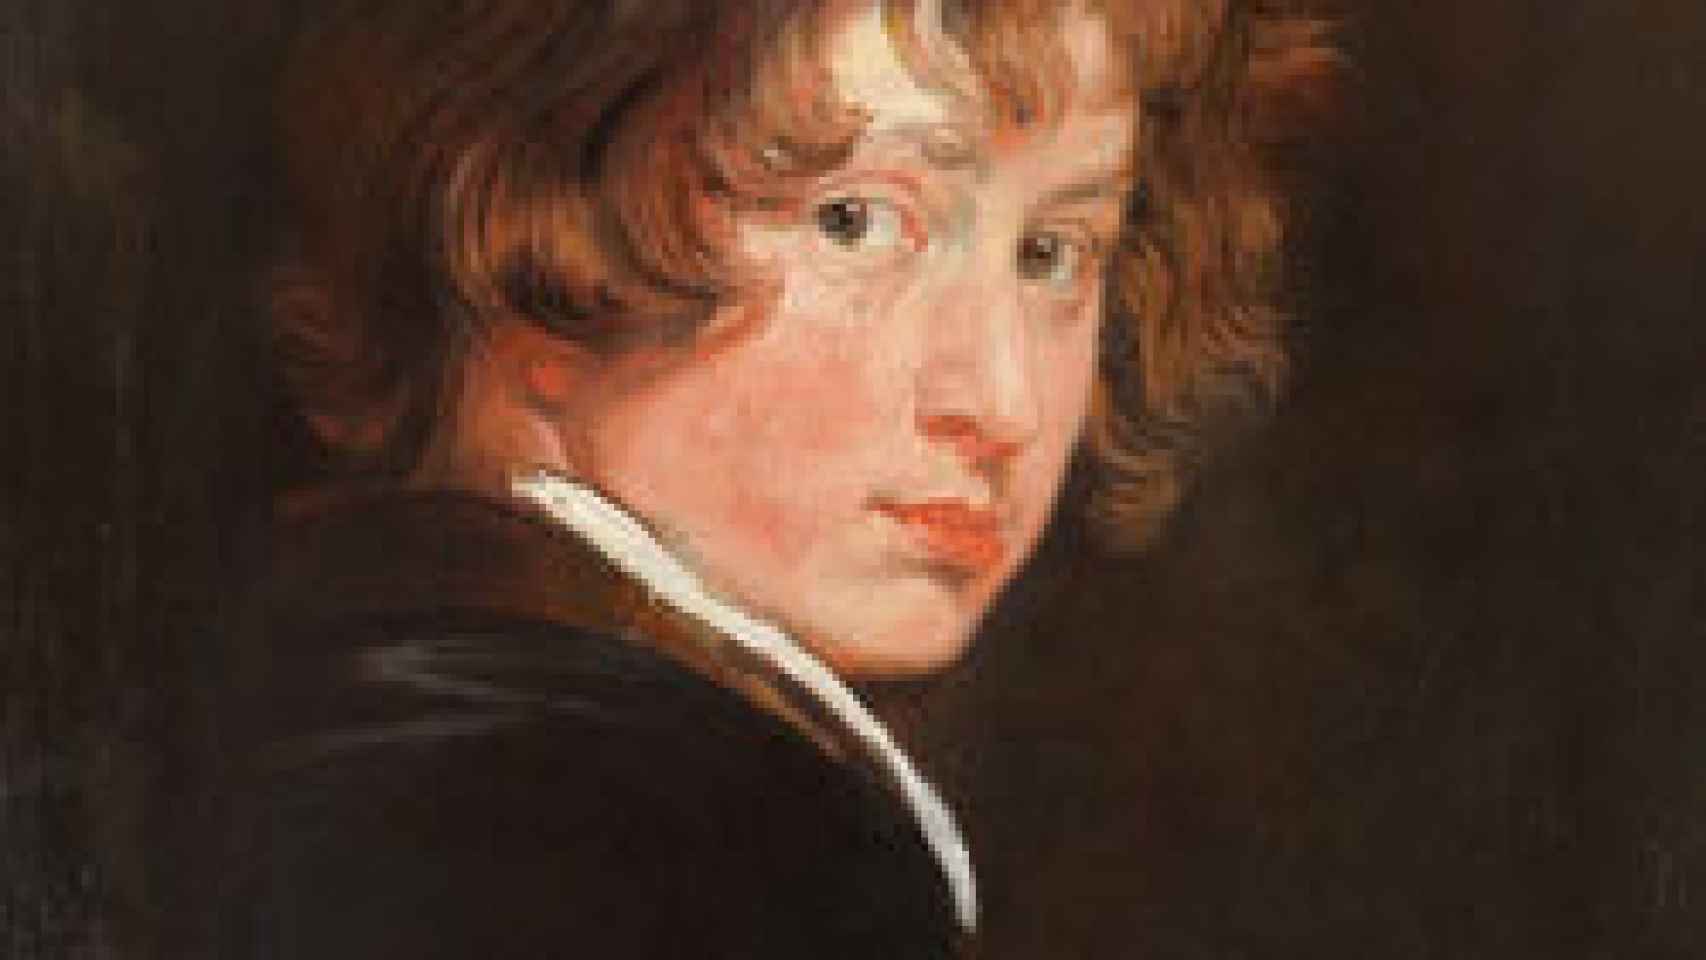 Image: Precoz Van Dyck